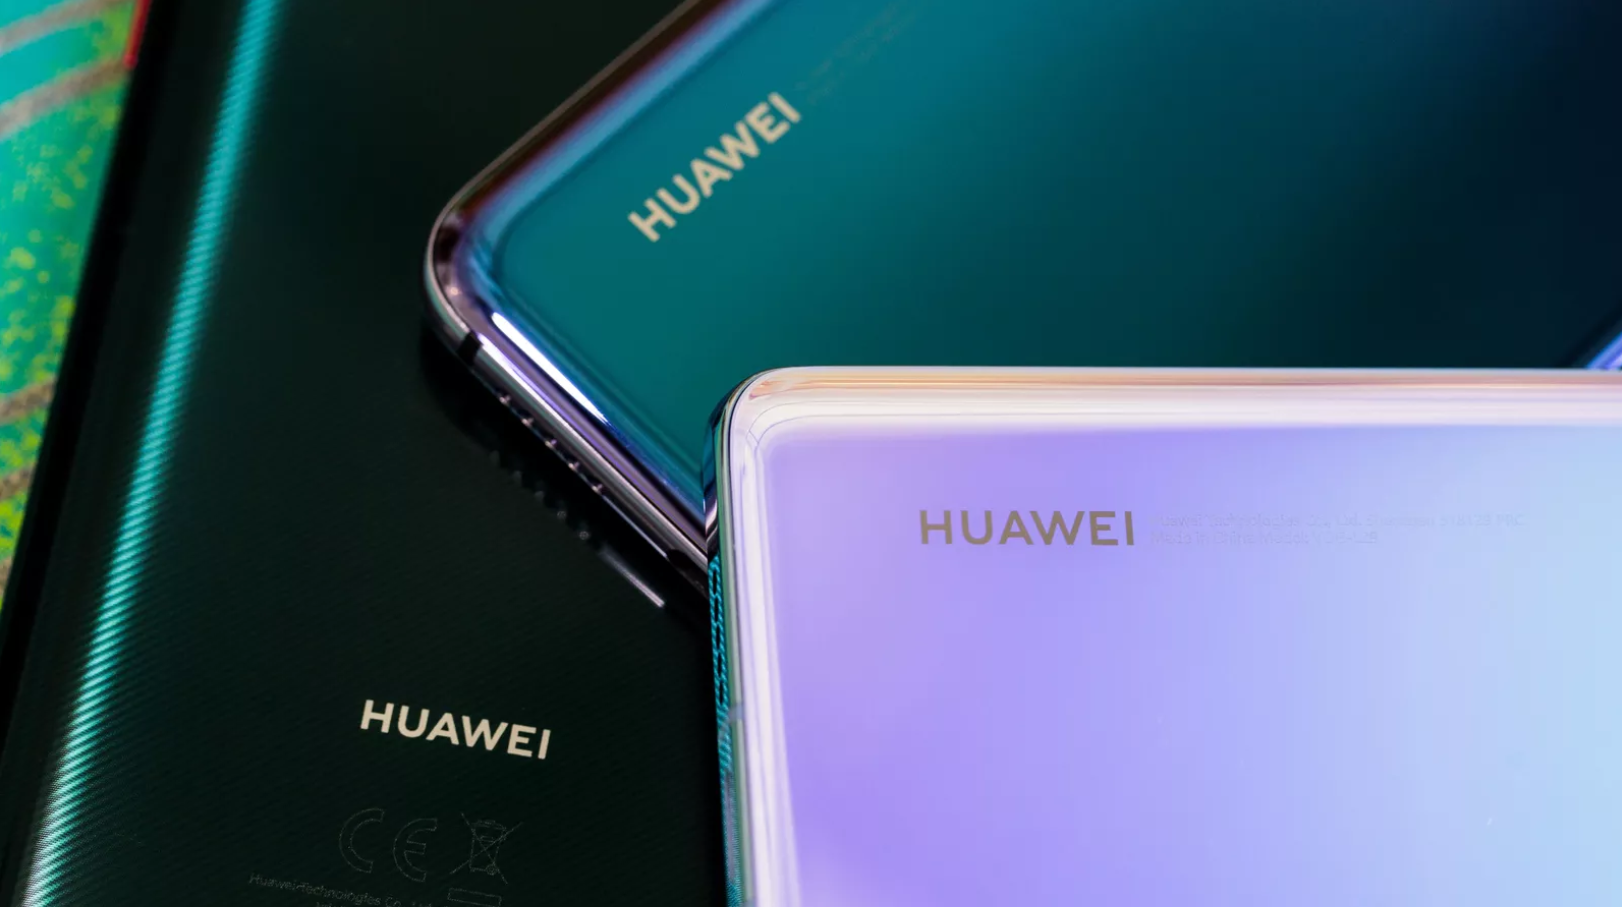 Los teléfonos Huawei se envían con la aplicación Google, pero hay capturas